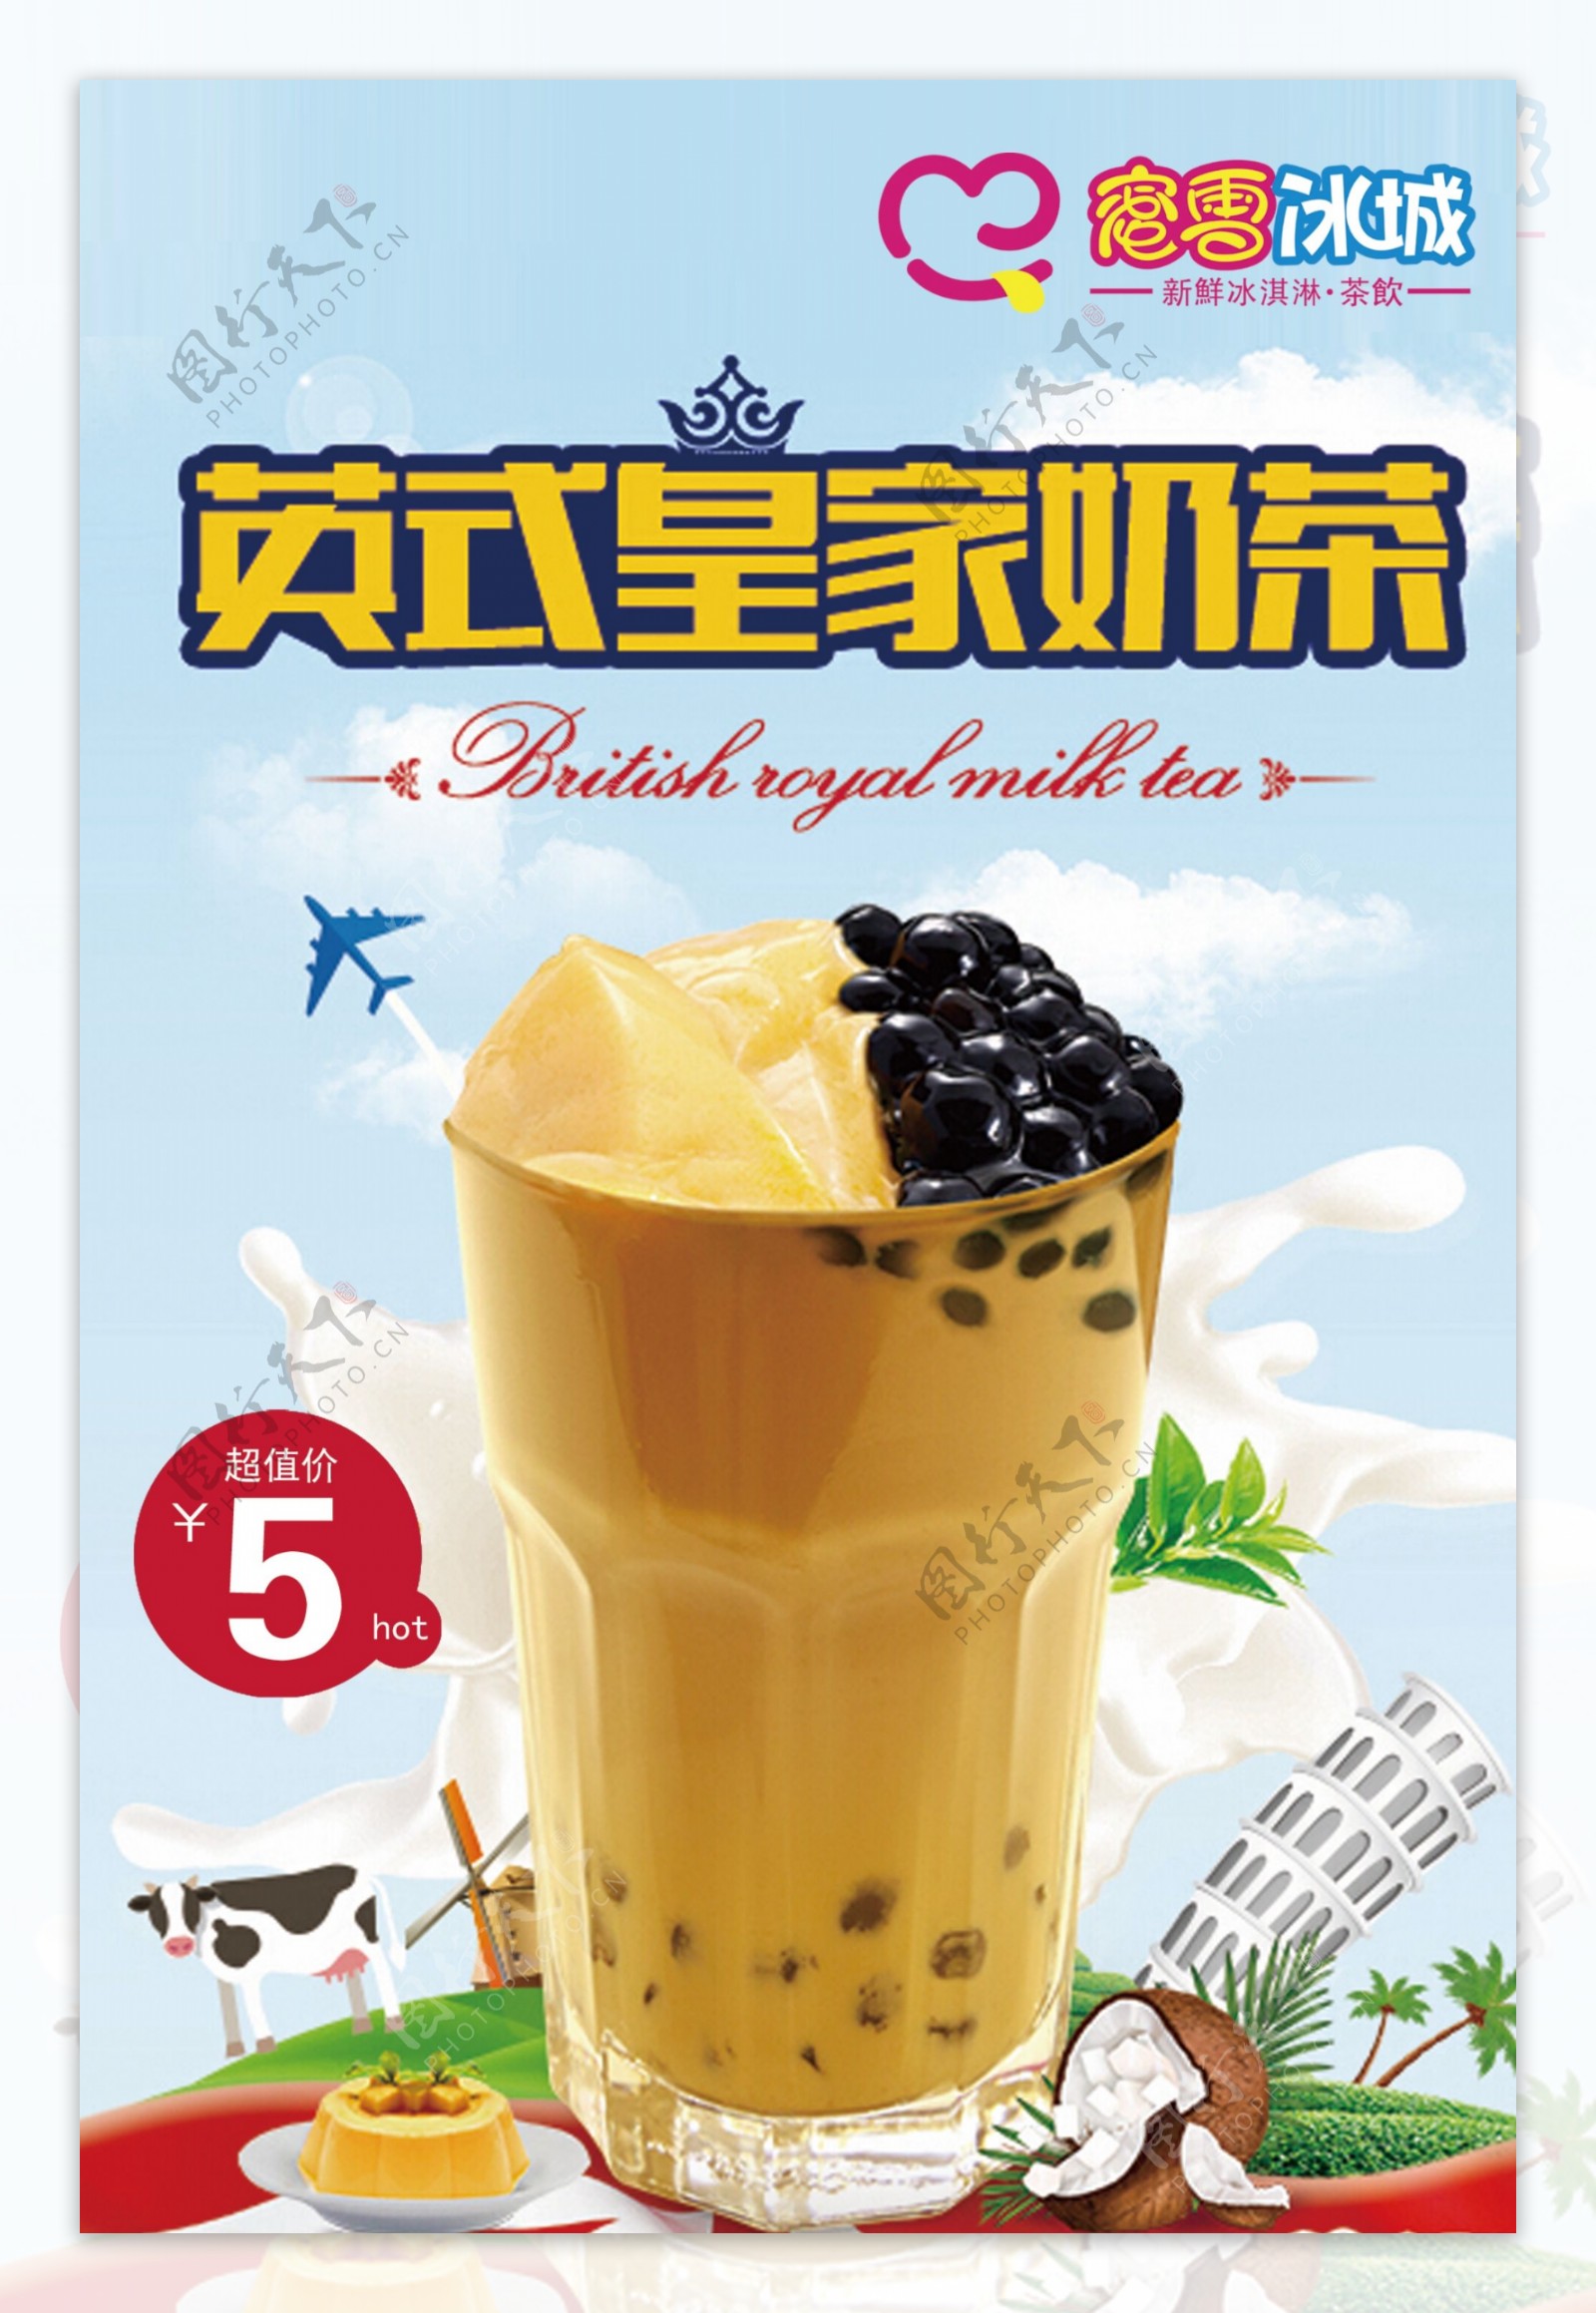 IPO在即，蜜雪冰城是要“踏实卖奶茶”还是要“讲好新故事”？ | CBNData